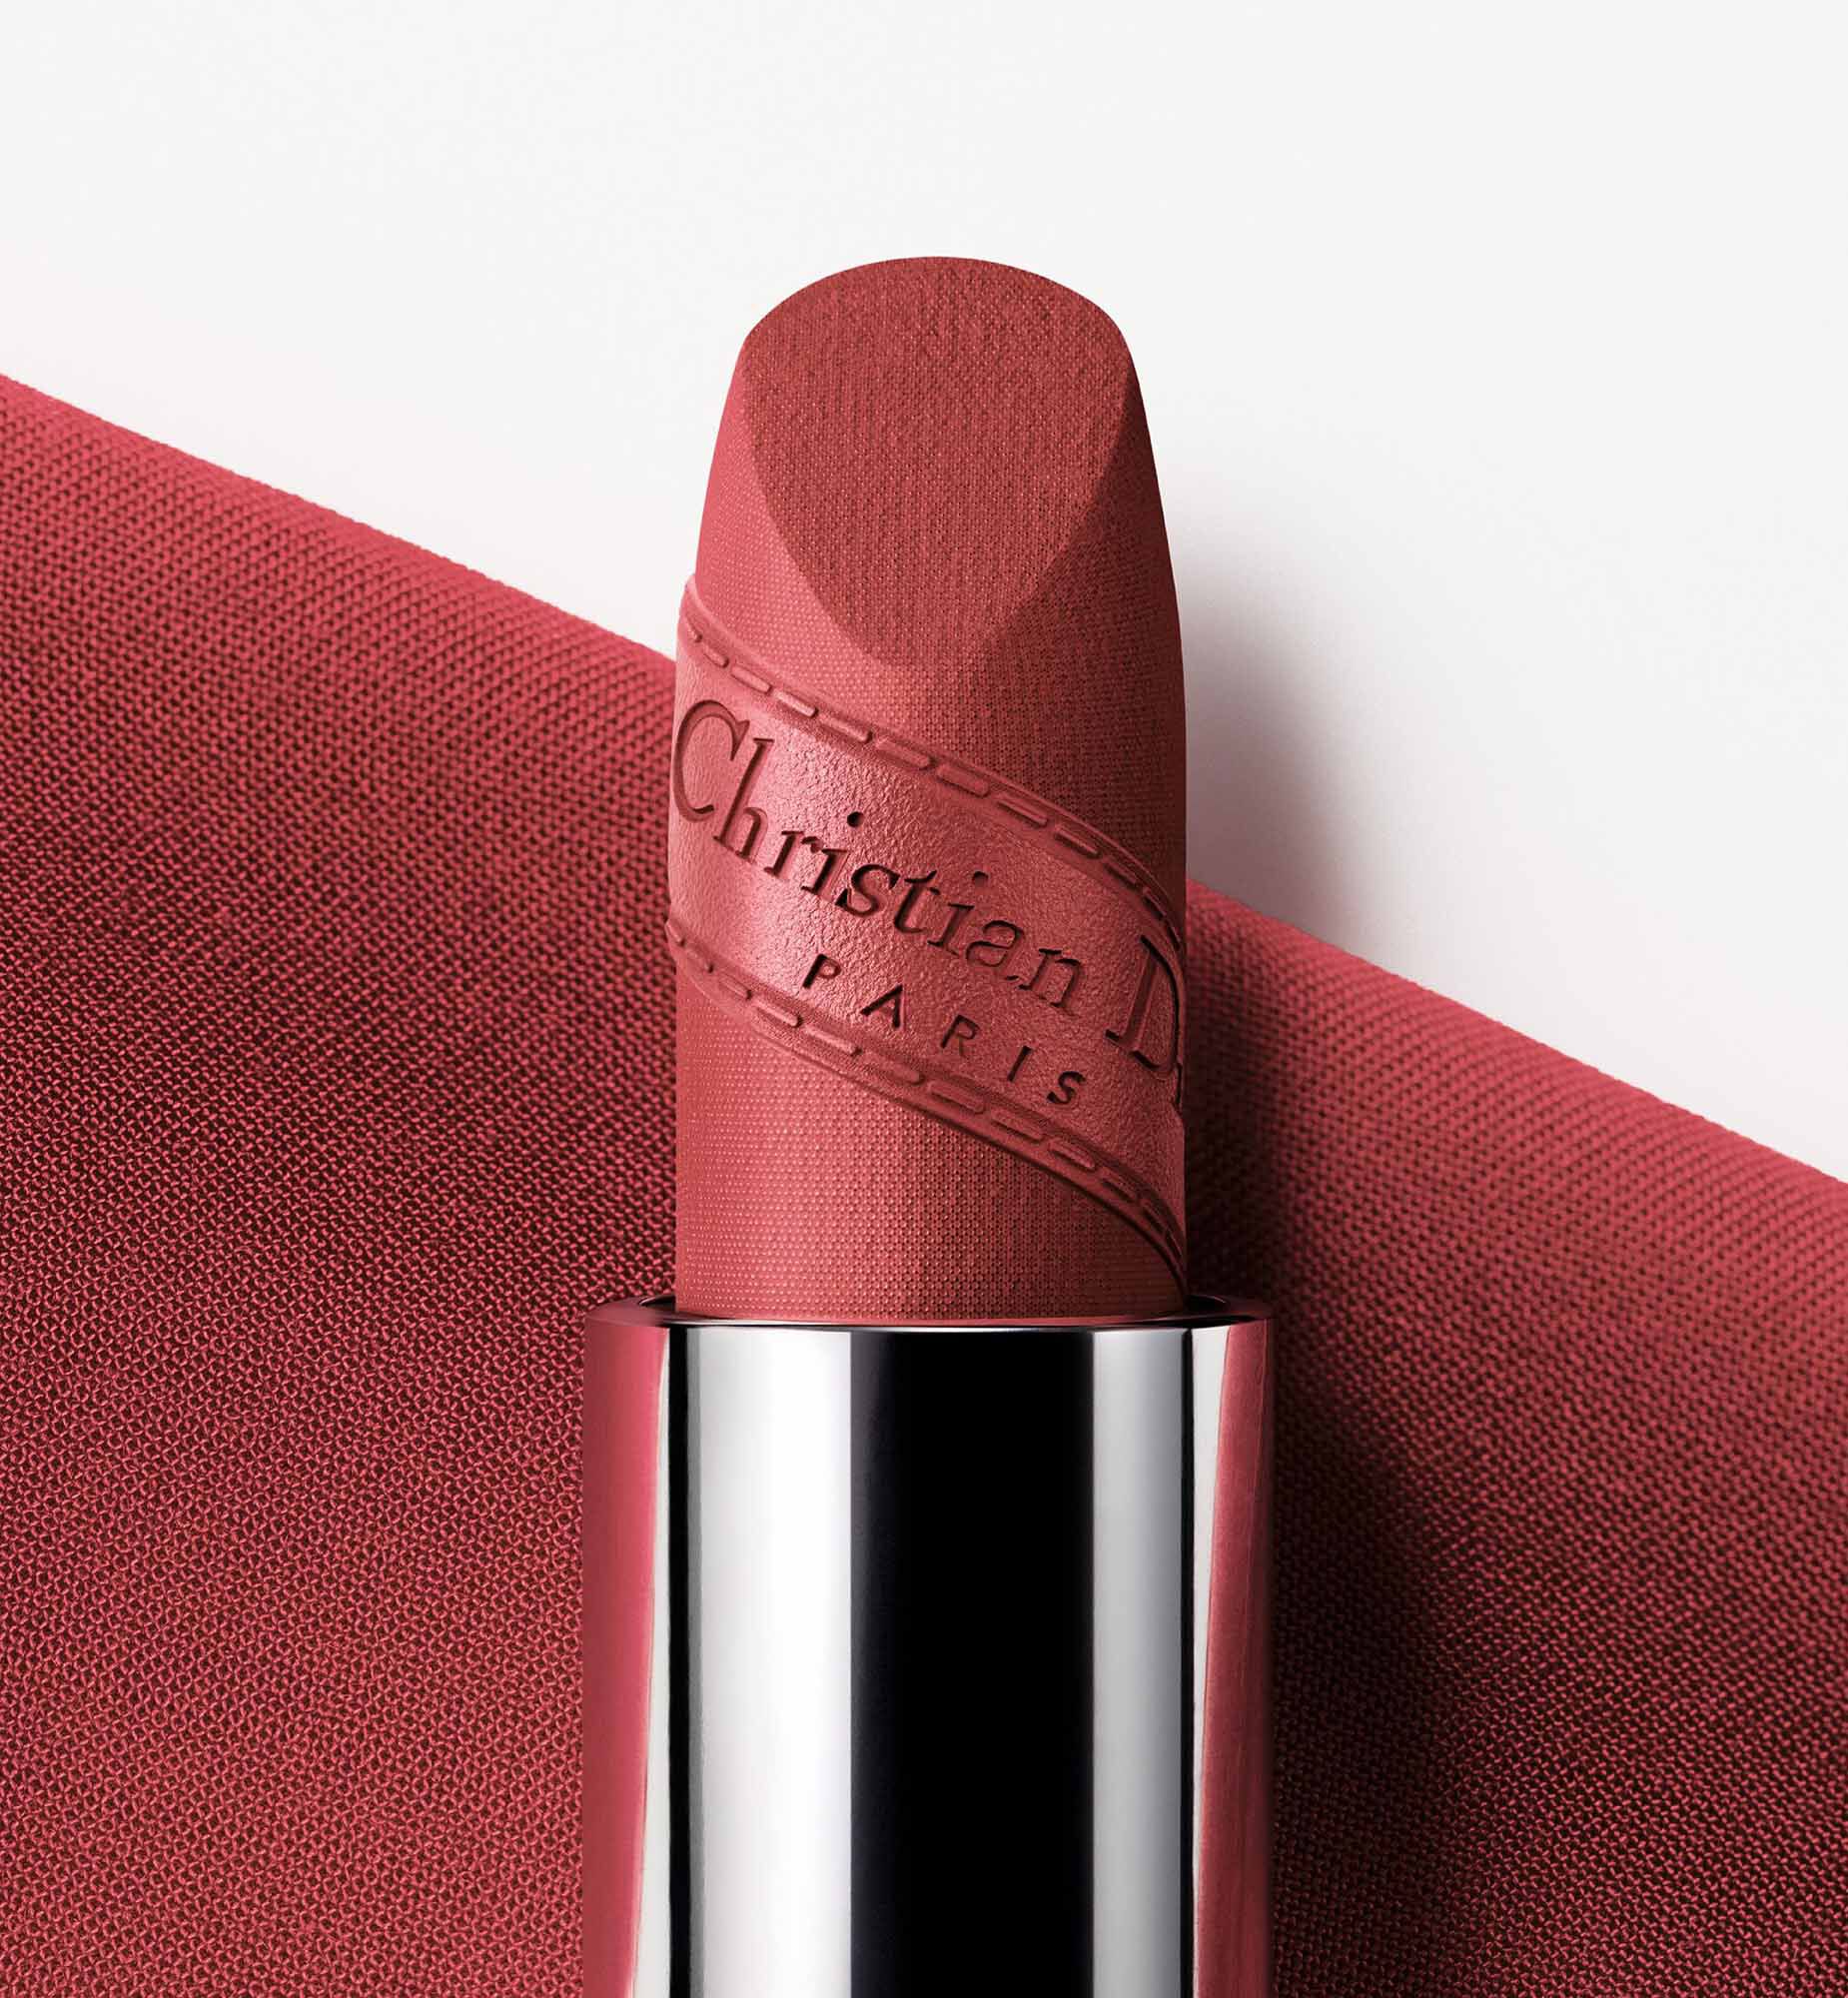 DIOR ADDICT REFILL  Hydrating shine lipstick refill  90 naturalori   Dior Beauty Online Boutique Singapore